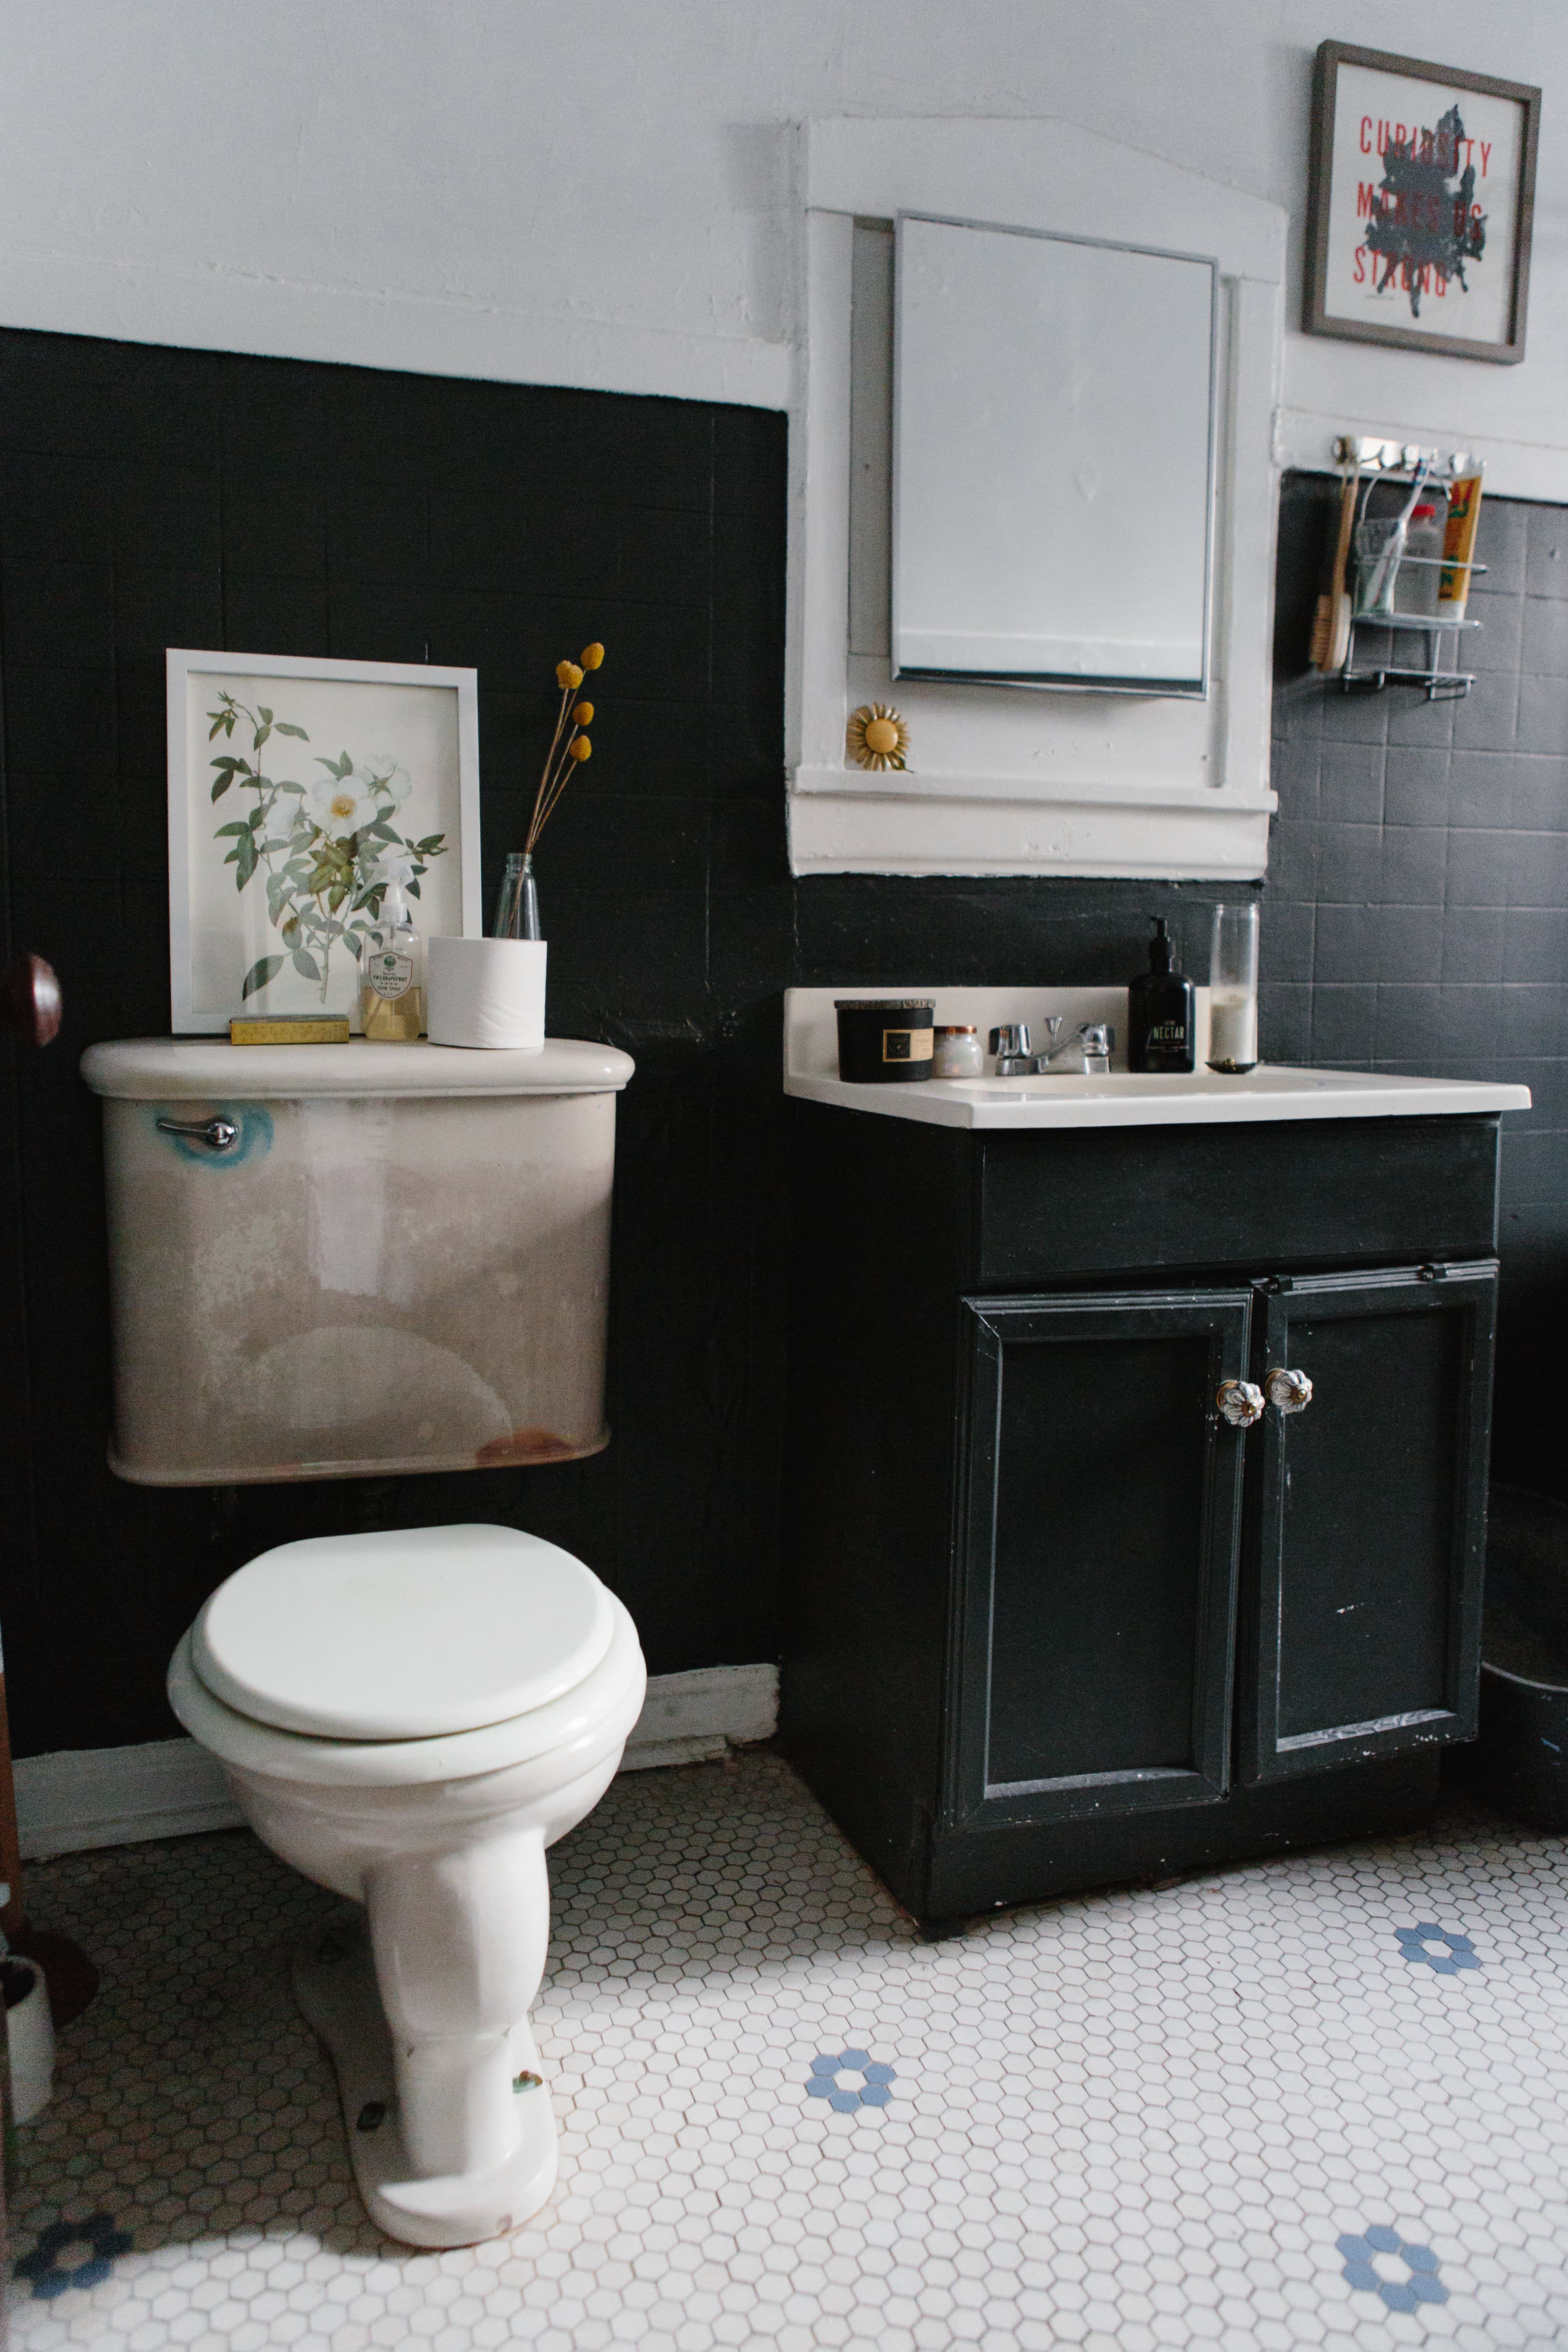  Color G Gray Bathroom Rugs - Upgrade Your Bathroom